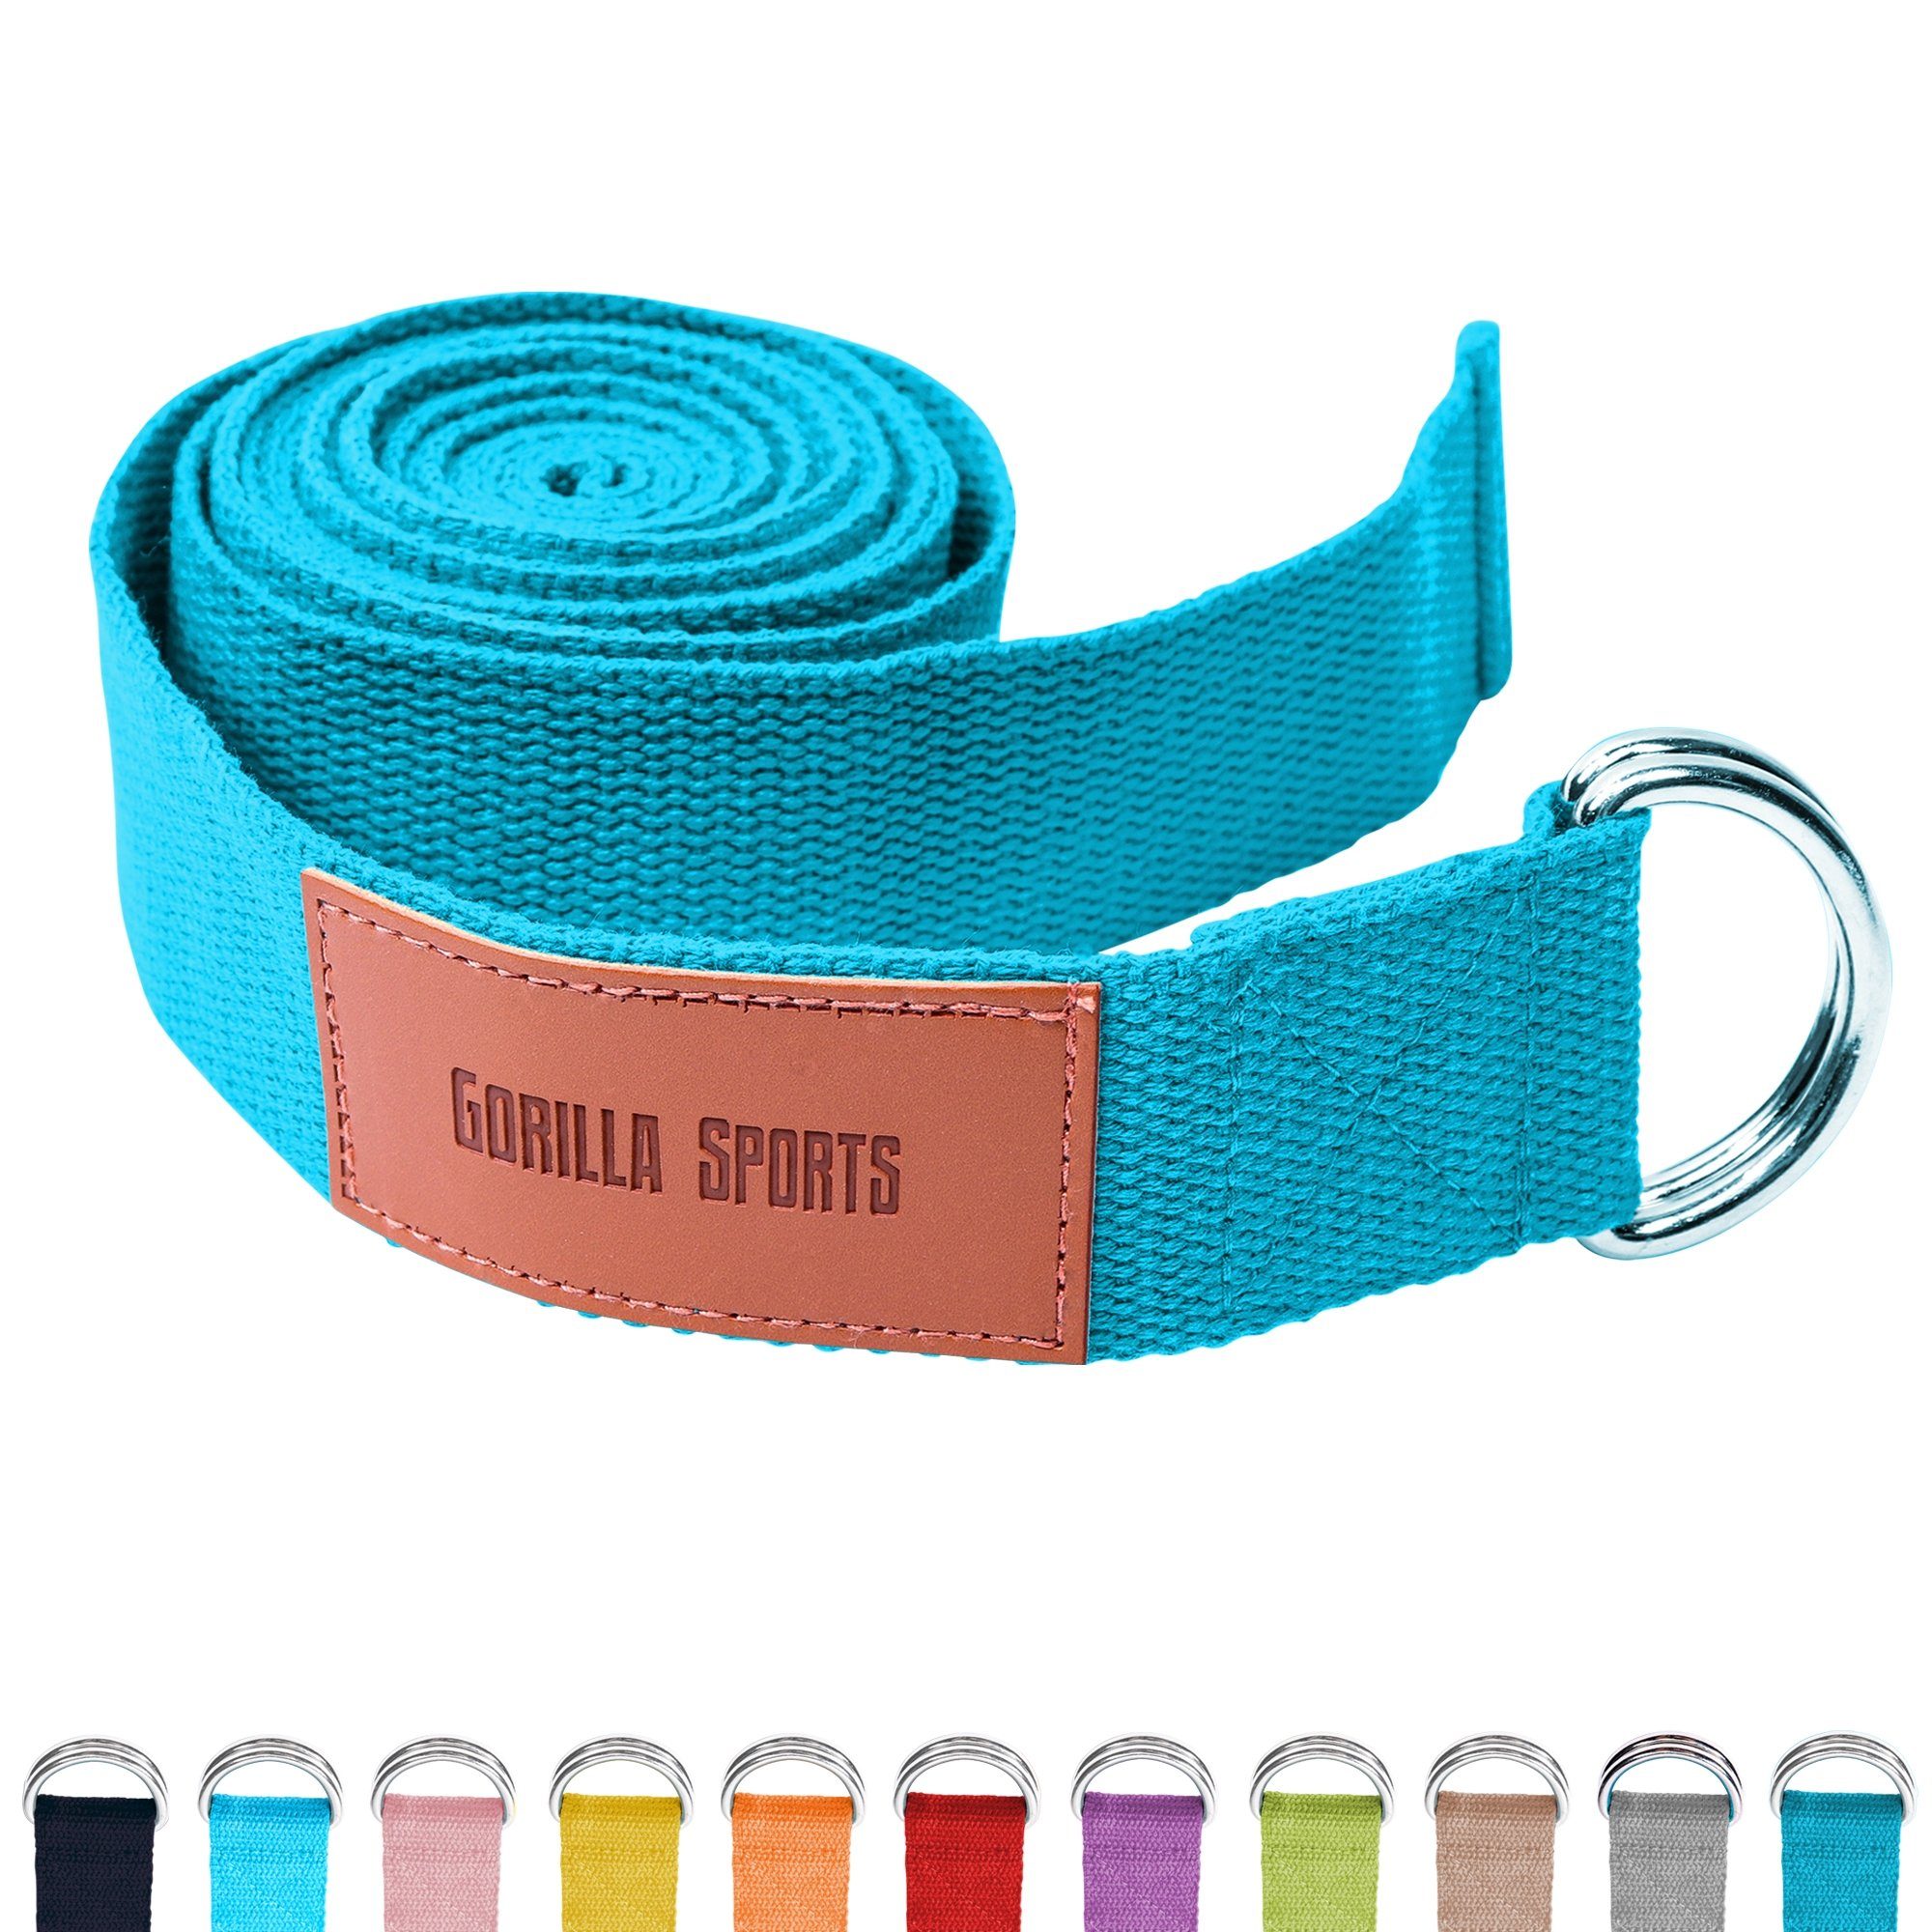 Metall, Baumwolle, Yoga SPORTS aus Strap GORILLA Verschluss Yoga-Gürtel, Blau mit Yogagurt 100%